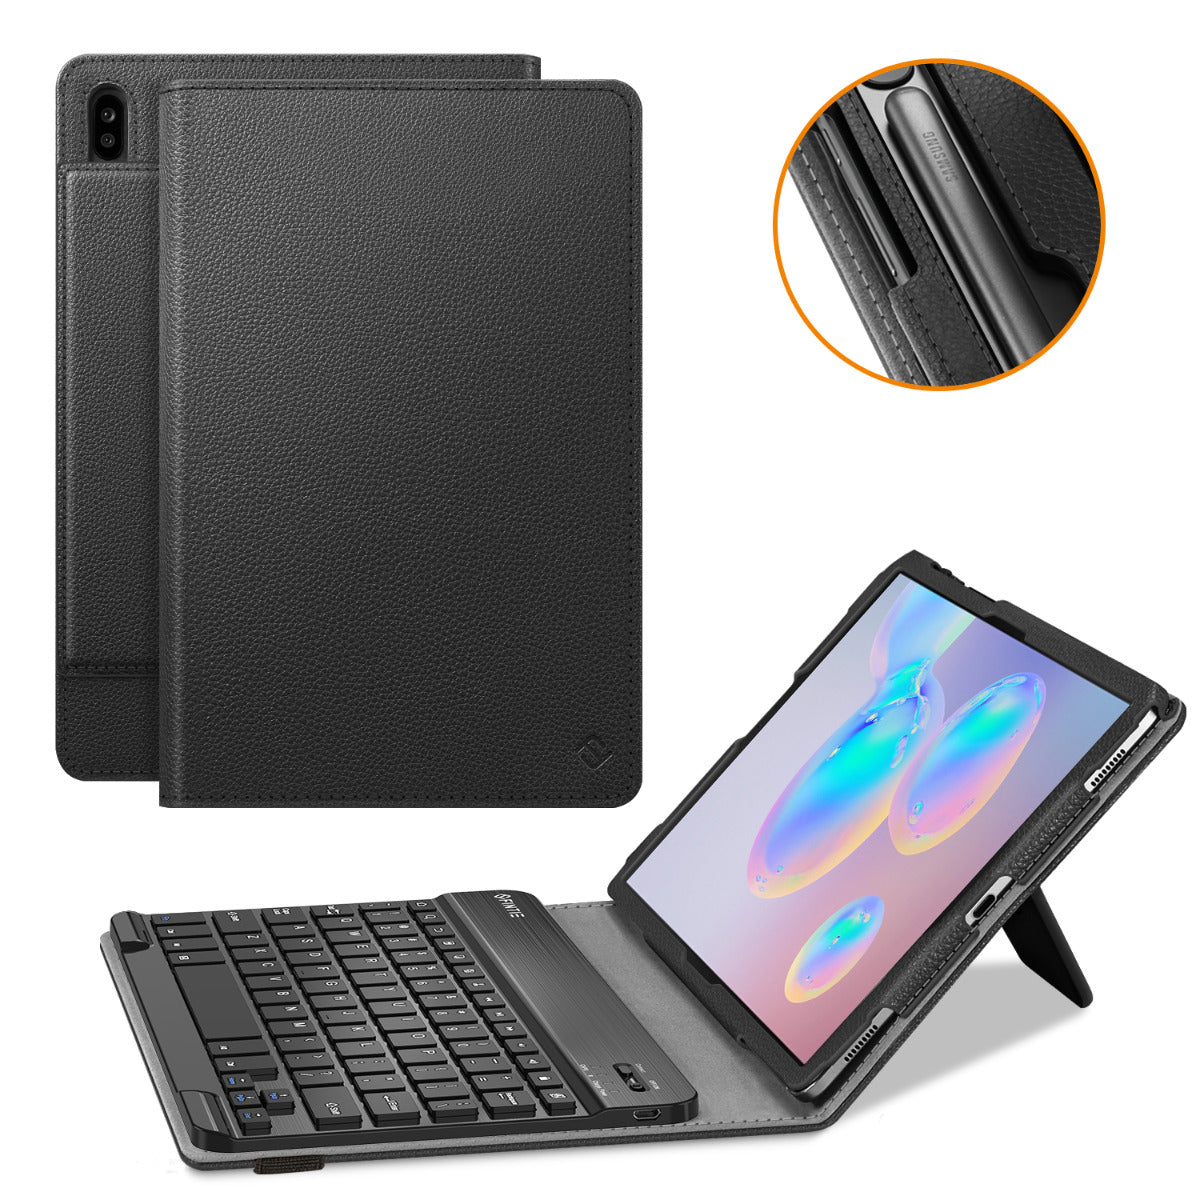 Onafhankelijk Ga naar het circuit toewijzing Galaxy Tab S6 10.5" 2019 Keyboard Case Folio Stand Cover | Fintie